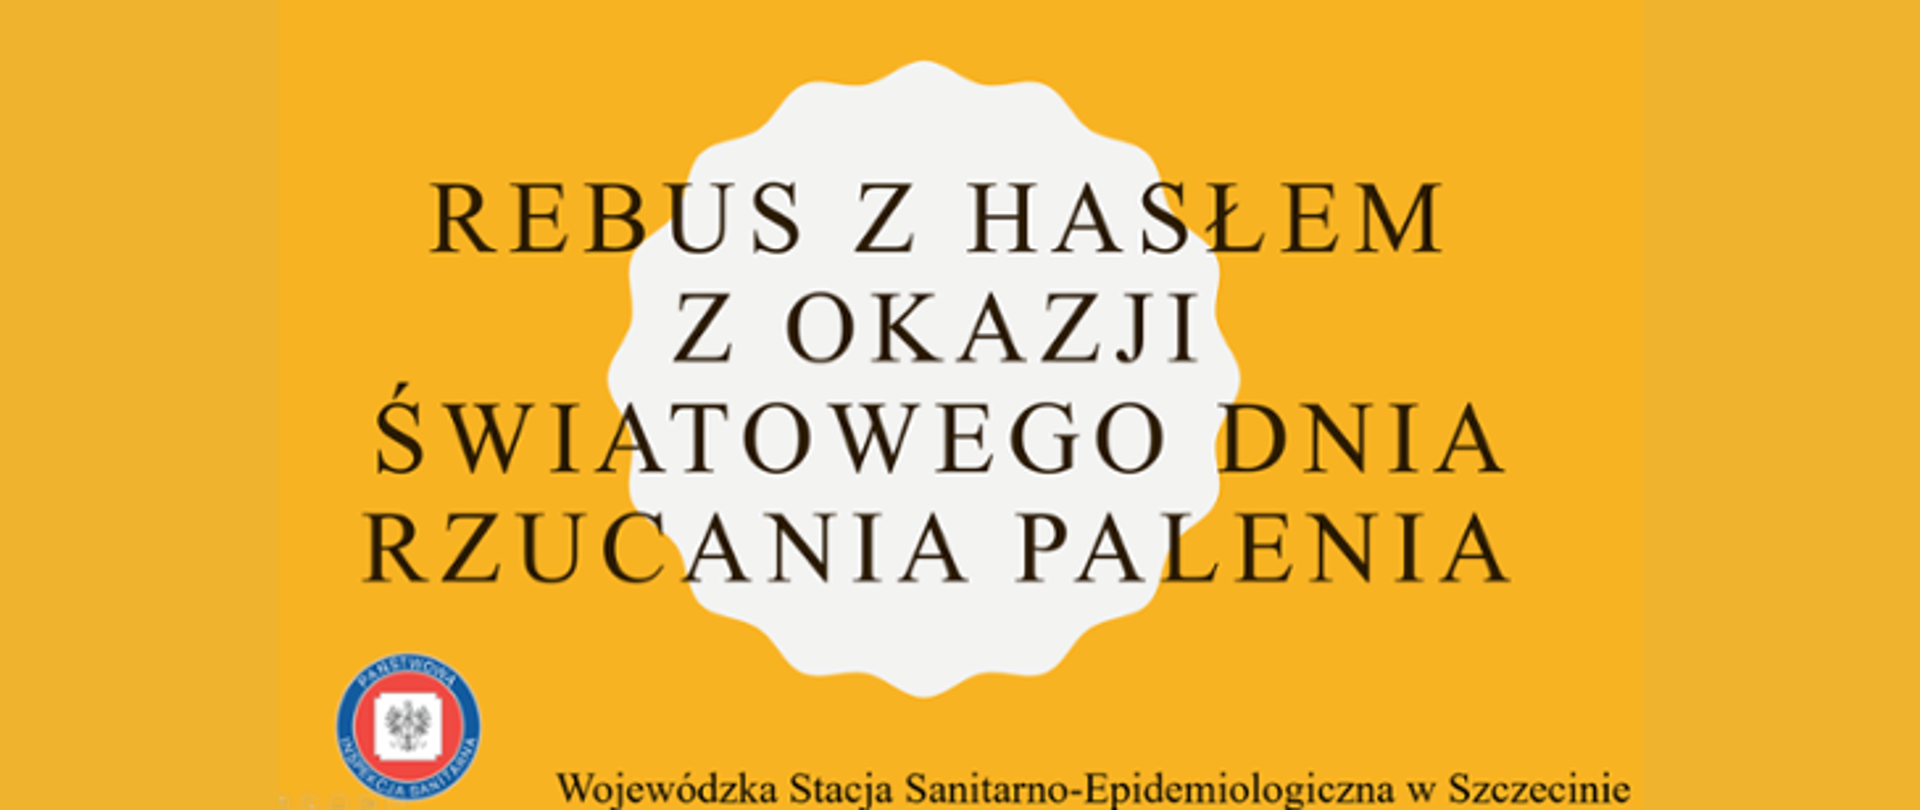 Na zdjęciu widoczny jest napis REBUS Z HASŁEM Z OKAZJI ŚWIATOWEGO DNIA RZUCANIA PALENIA. Poniżej znajduje się logo Państwowej Inspekcji Sanitarnej wraz z napisem Wojewódzka Stacja Sanitarno - Epidemiologiczna w Szczecinie. Tło jest żółte.